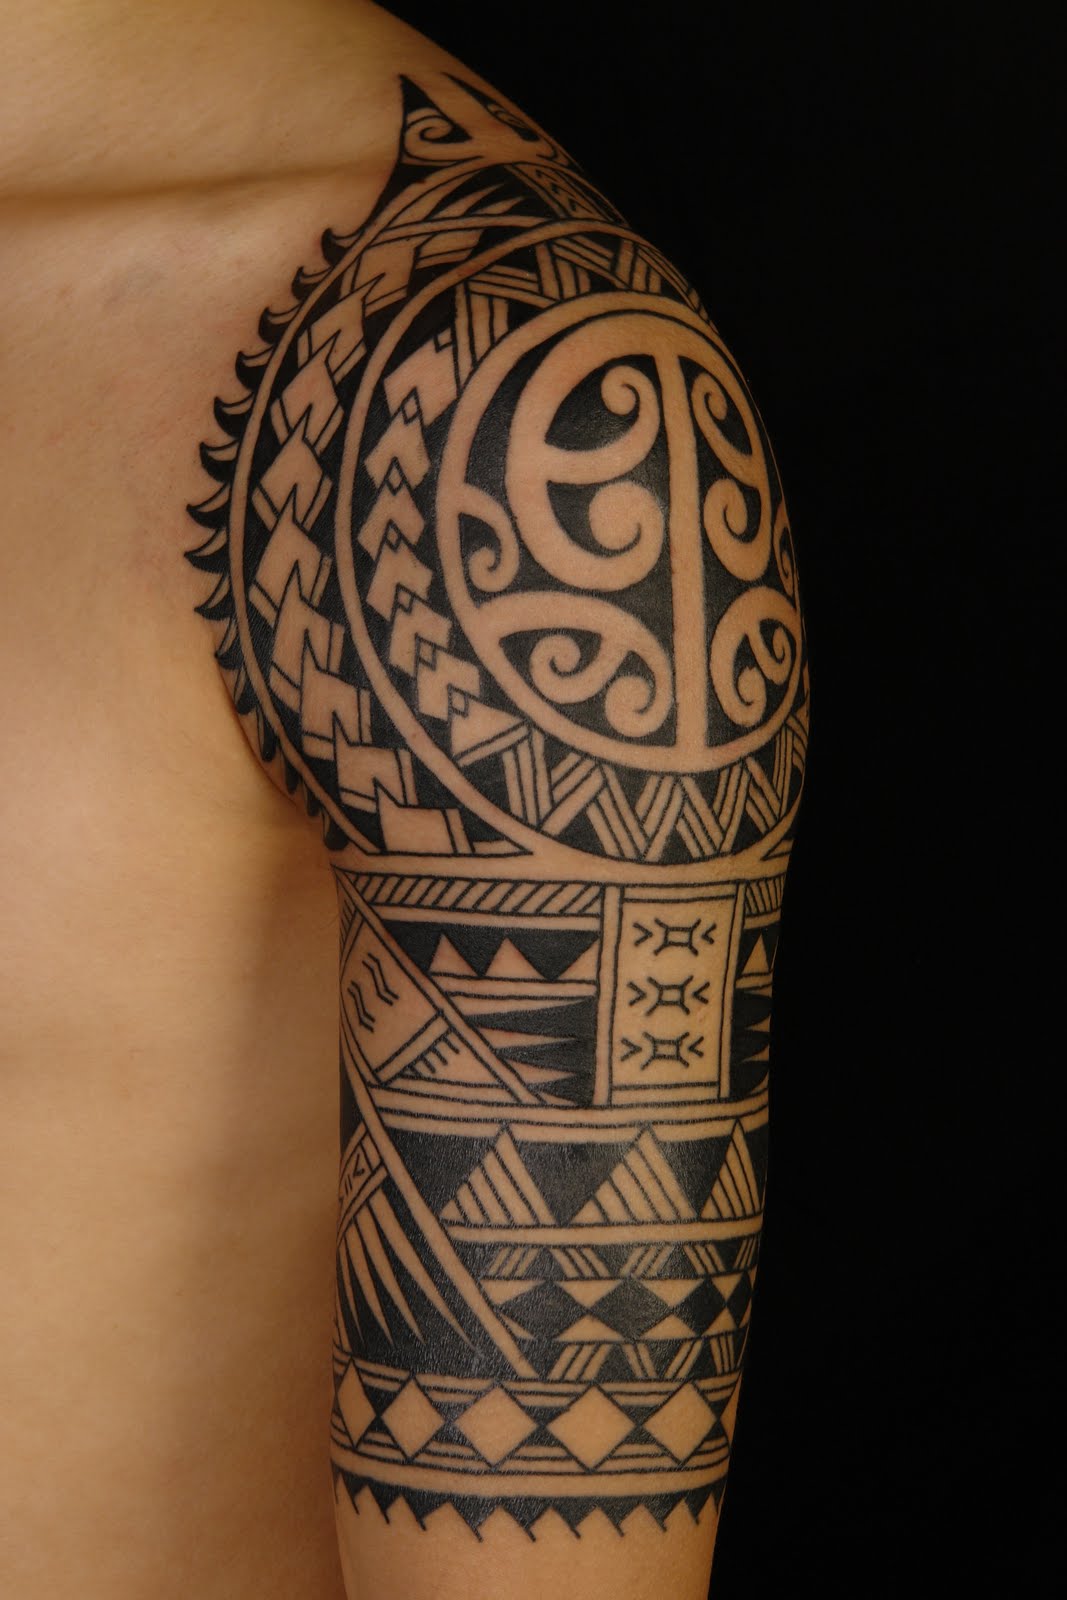 new tribal tattoo designs 2016